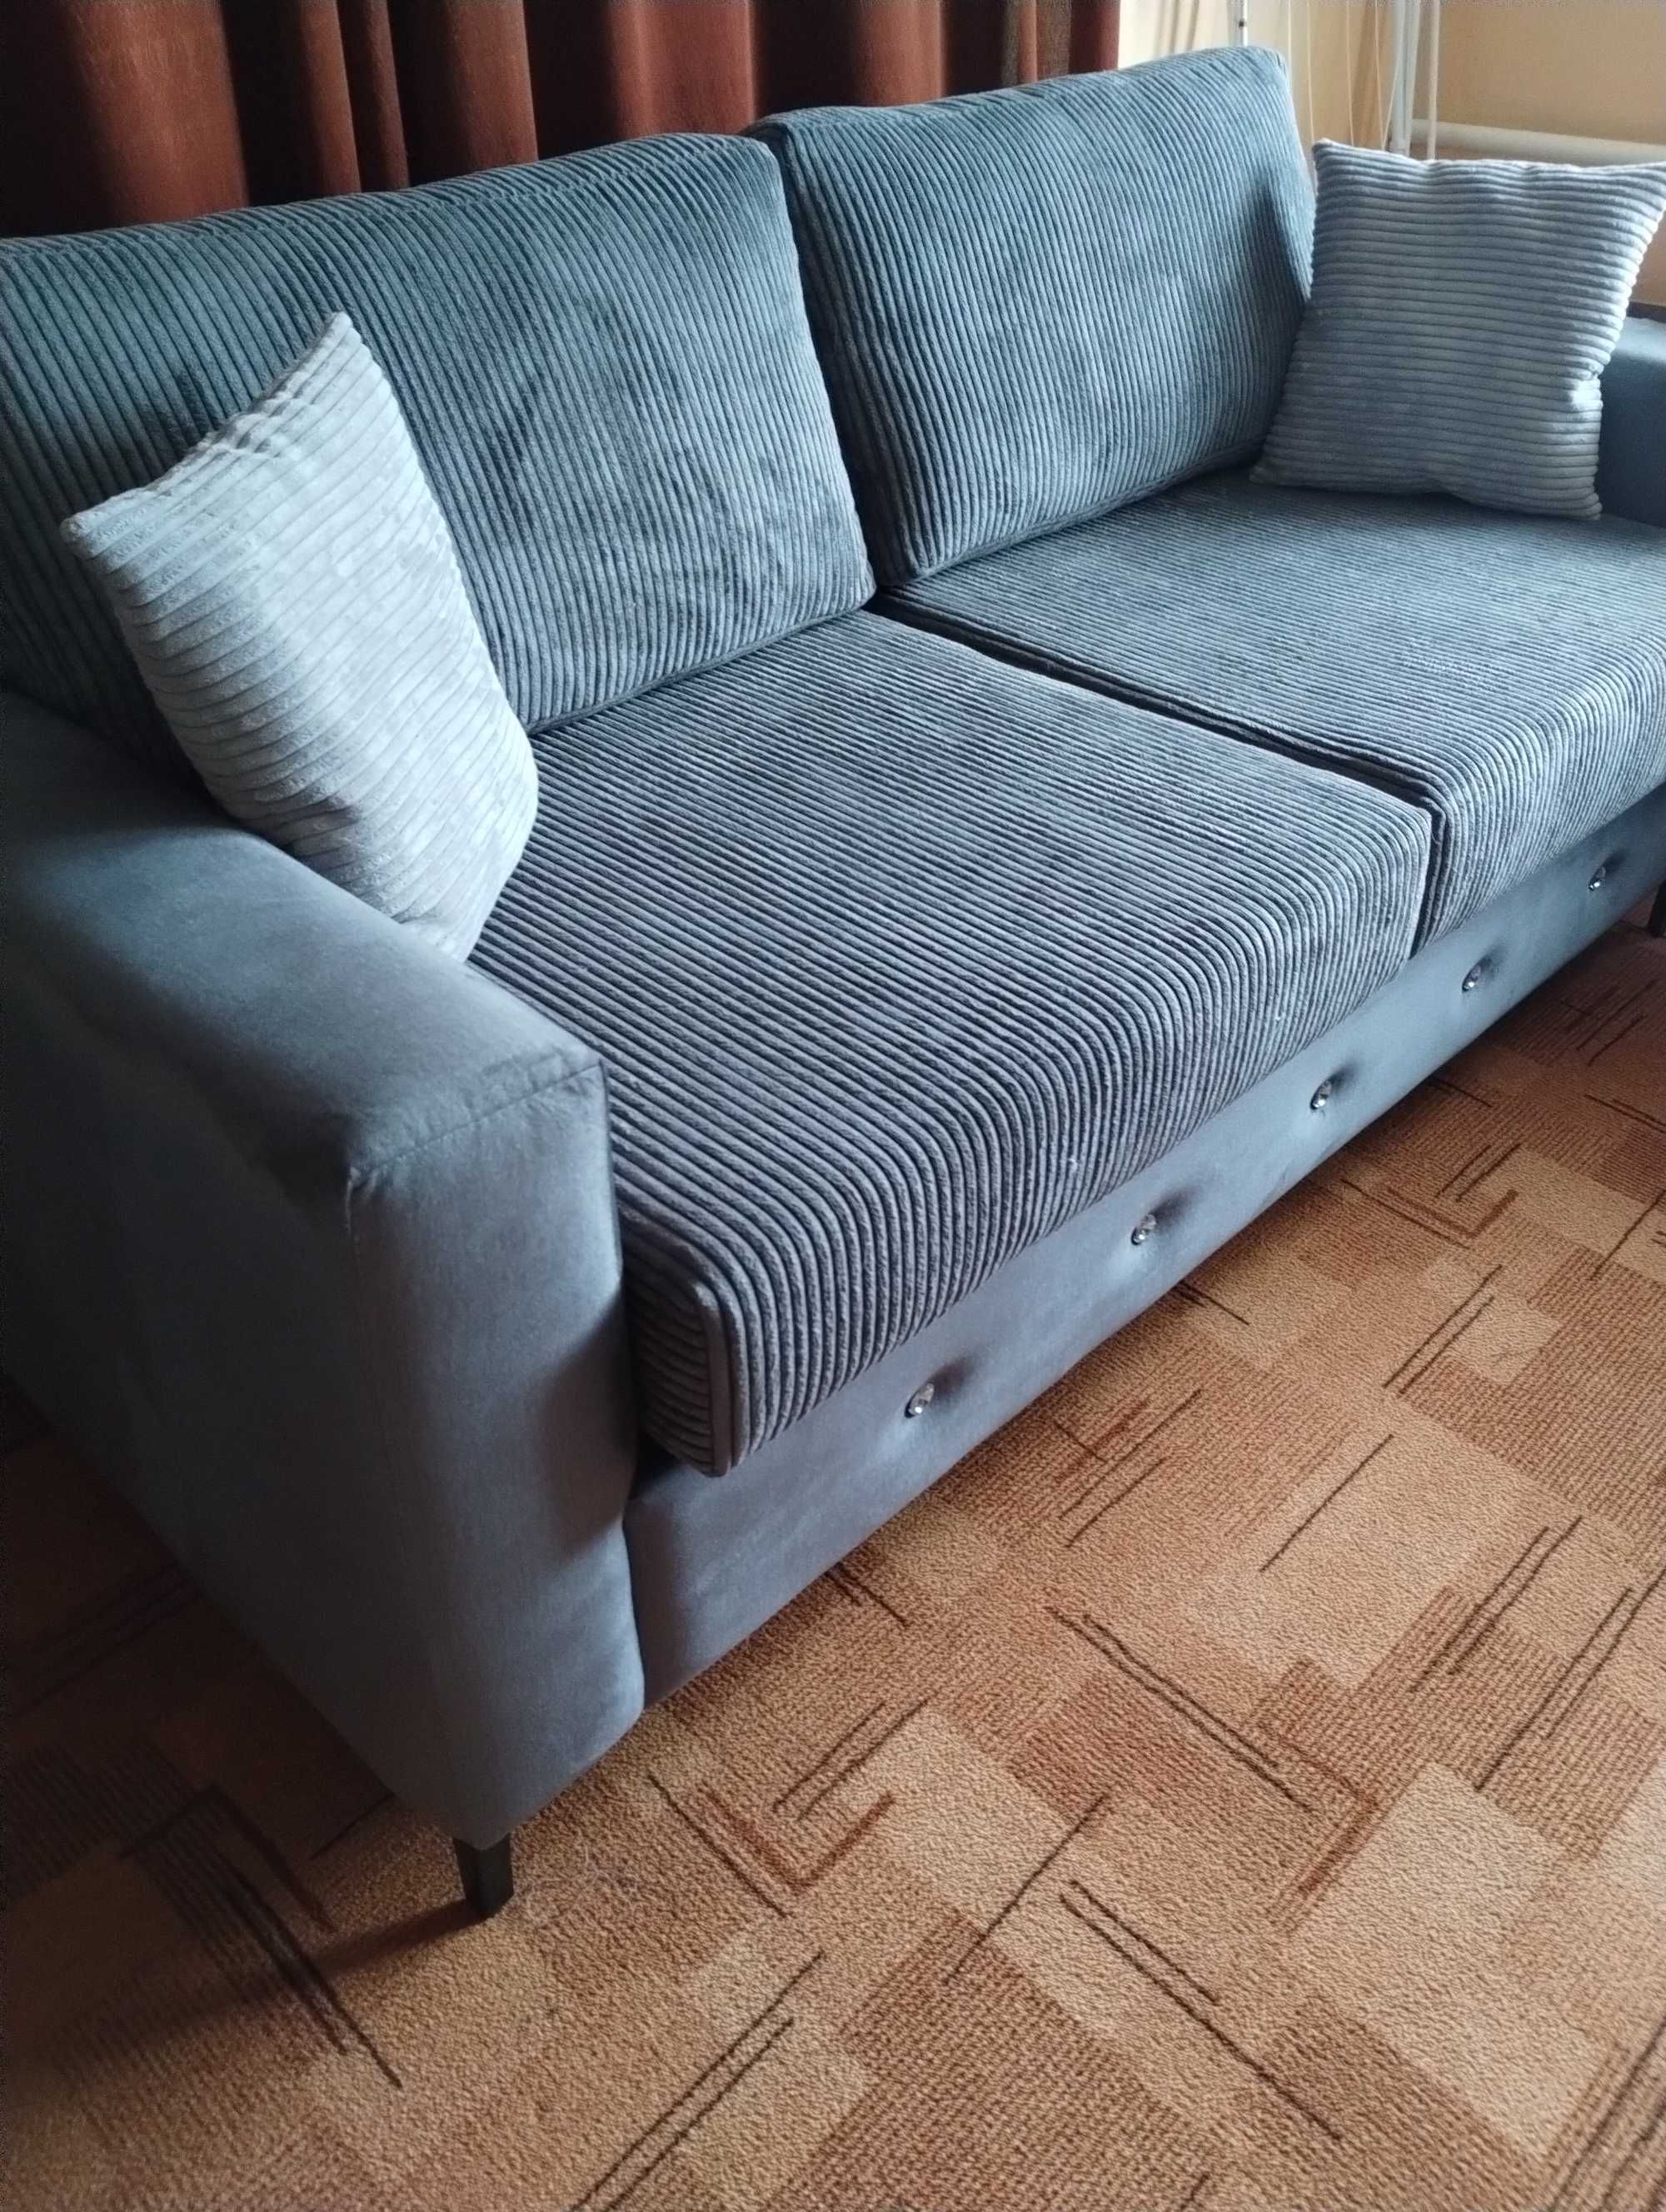 stylowa sofa nierozkładana 2-3 osobowa